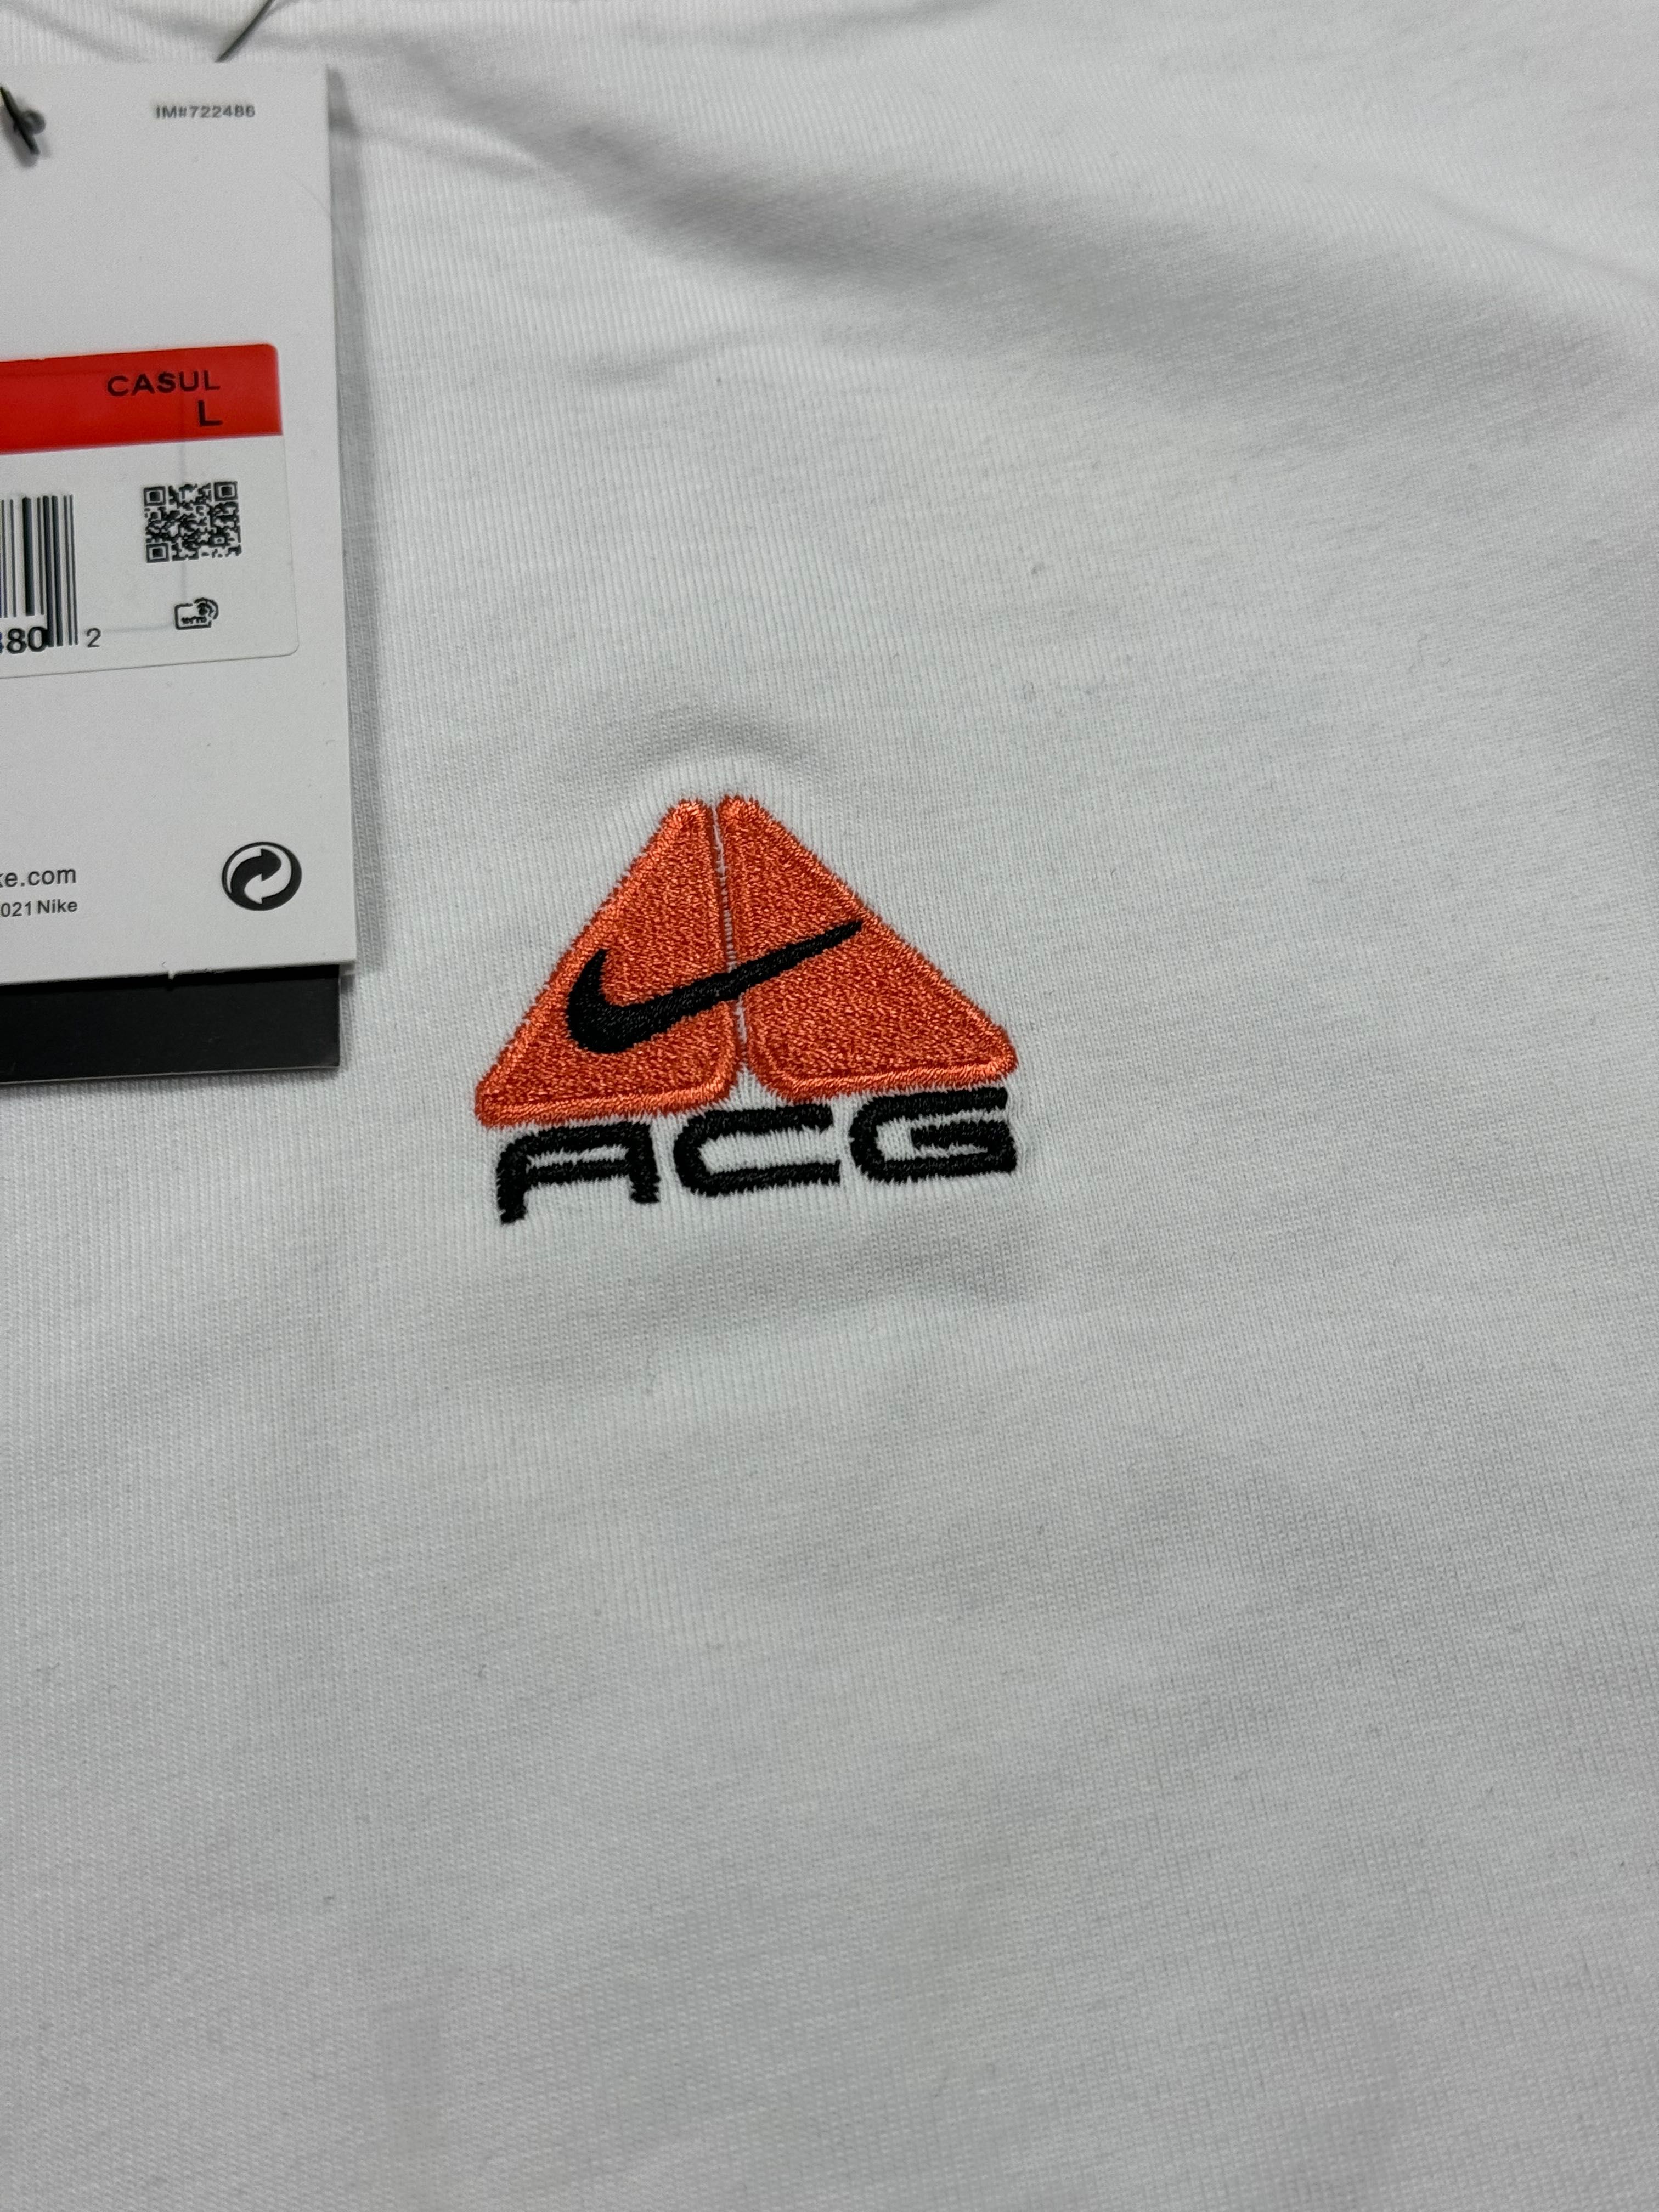 Футболка Nike Acg S M Розміри Нова Тн Асг Центр лого найк